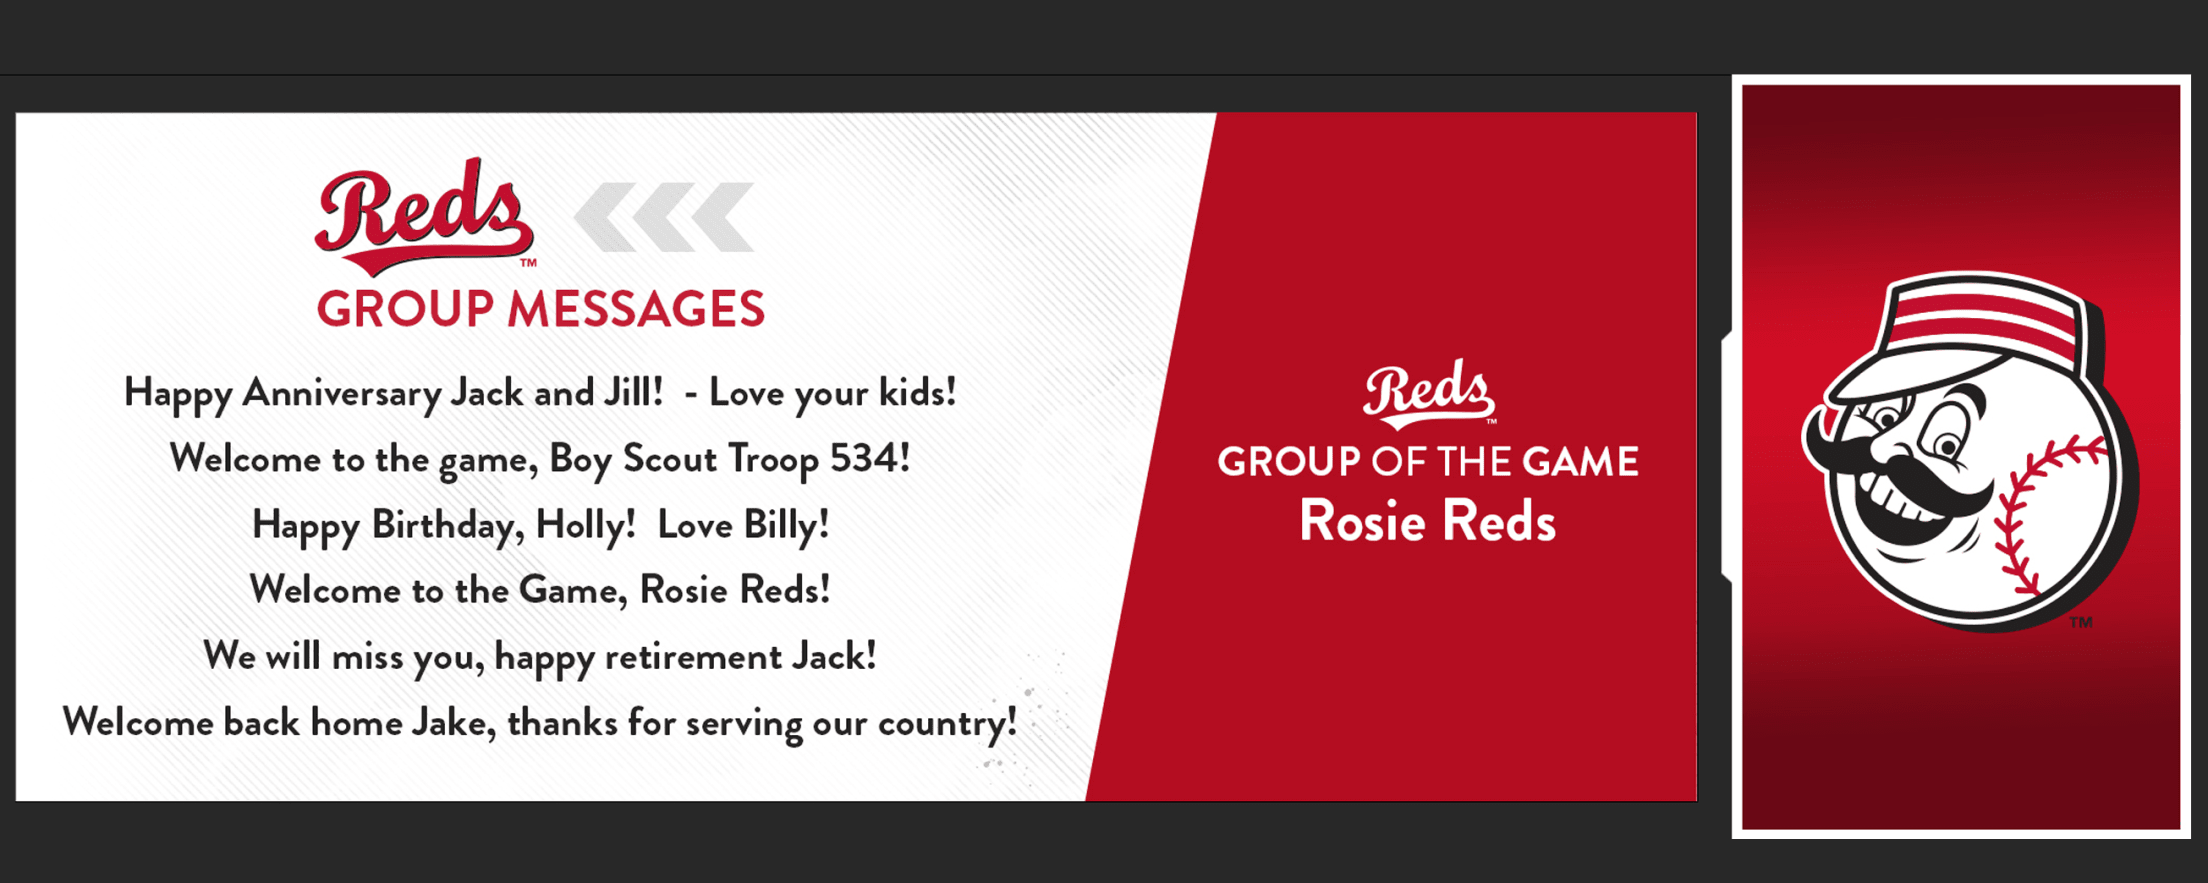 Cincinnati Reds - PSA: #VoteReds 5x a day❗️ ⭐ reds.com/allstar ⭐️